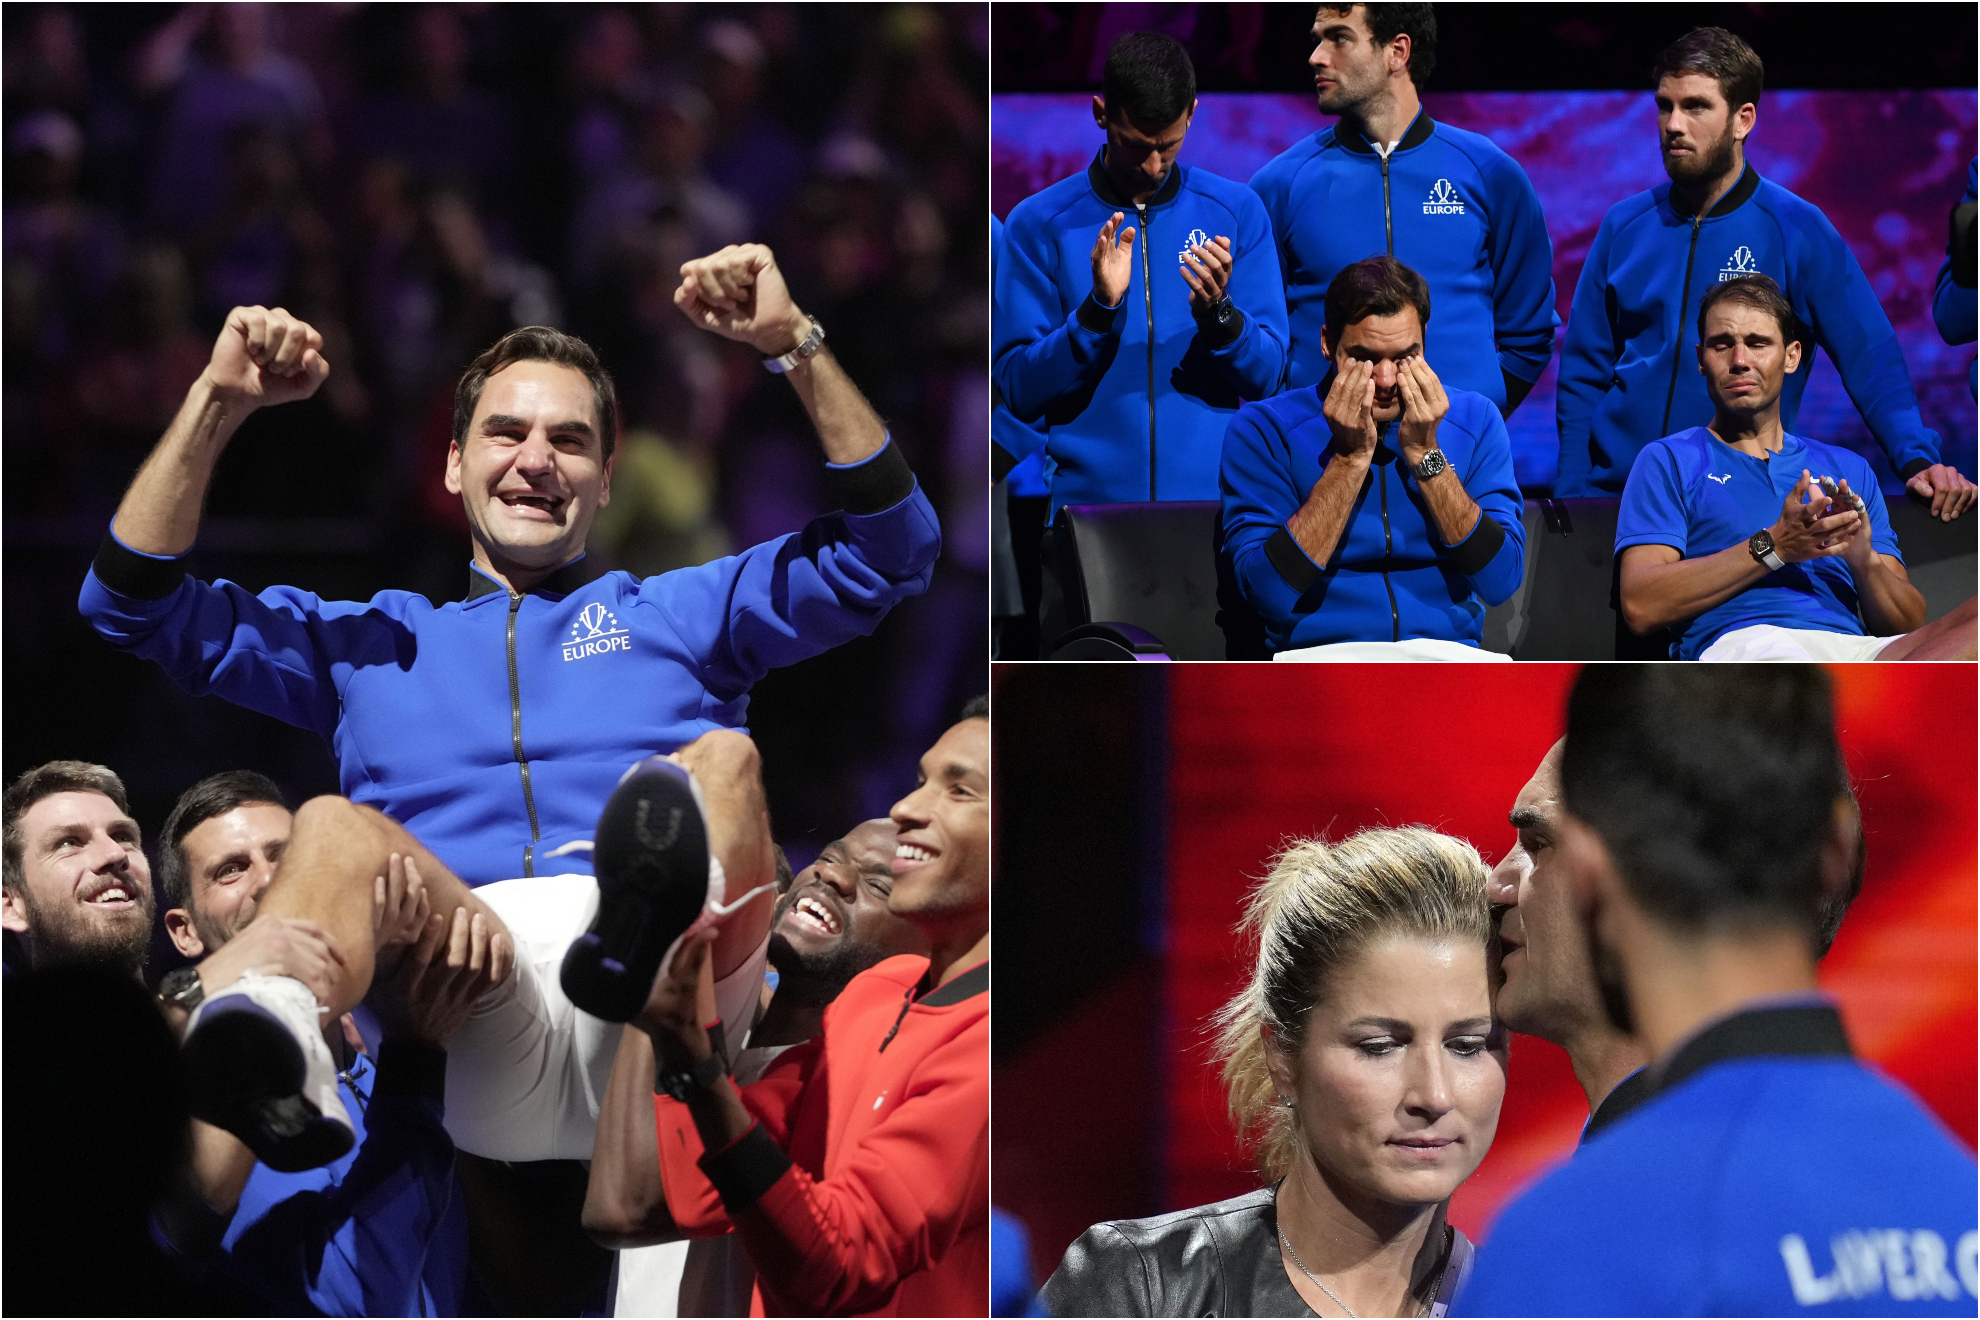 La despedida de Roger Federer, en imágenes